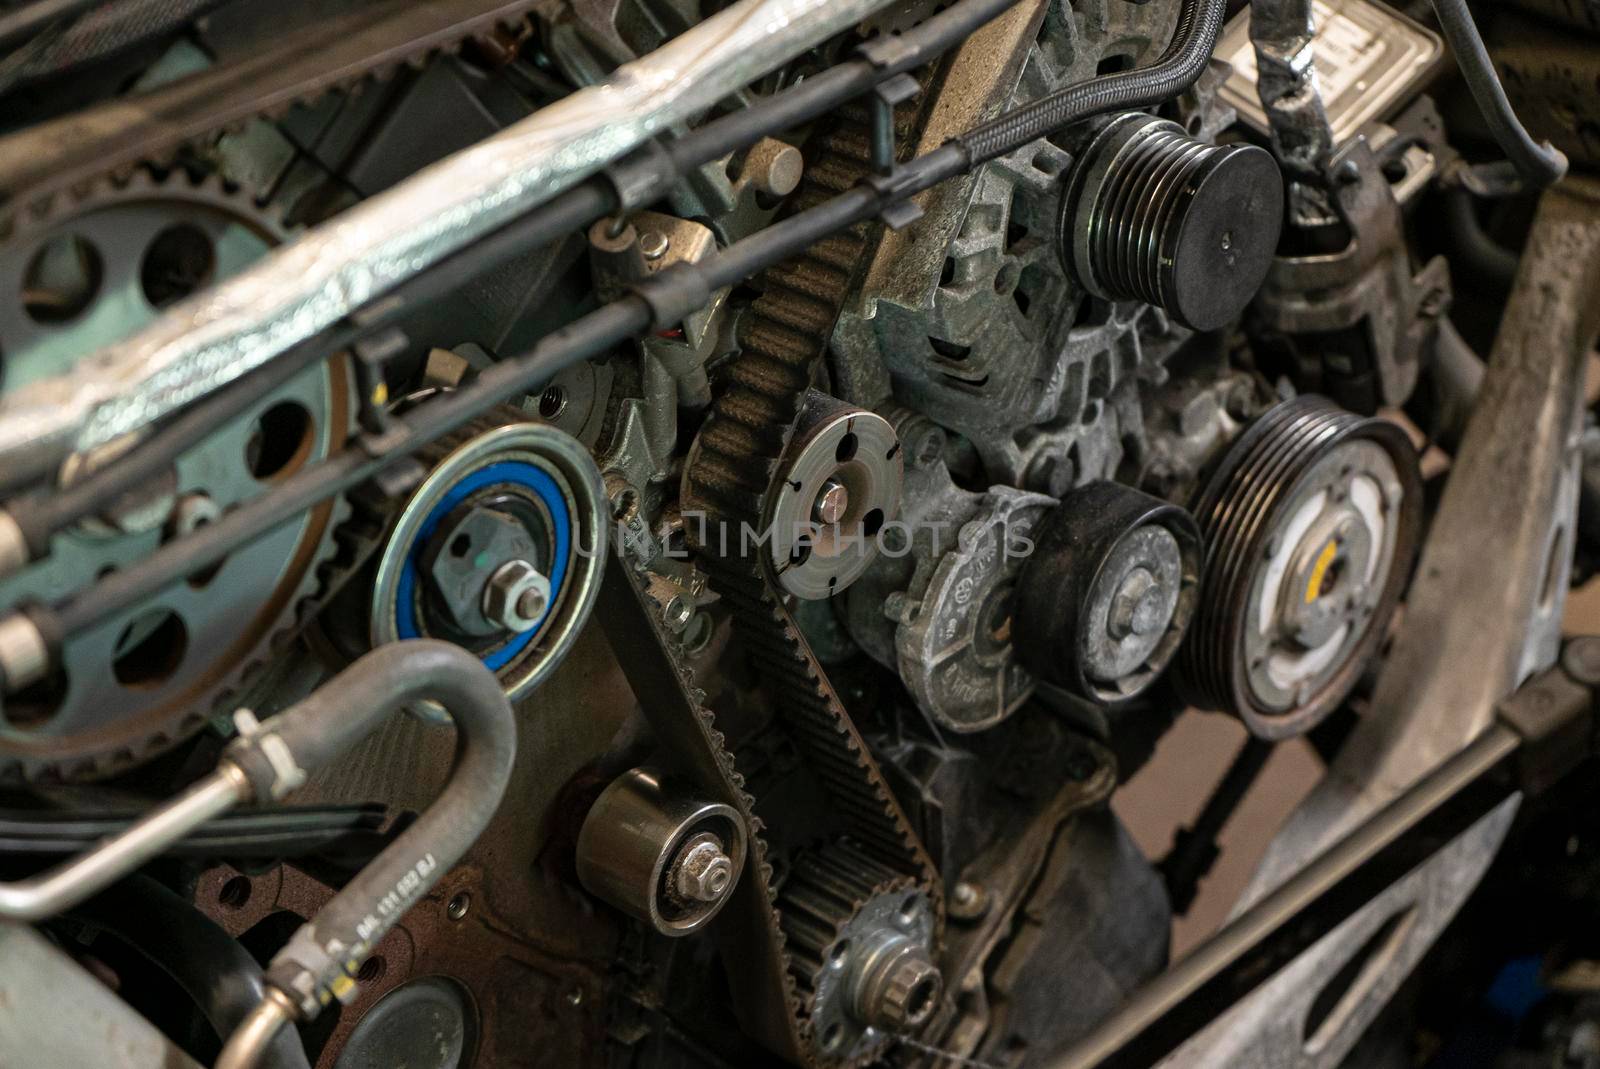 Detail of Car engine timing belt in a workshop